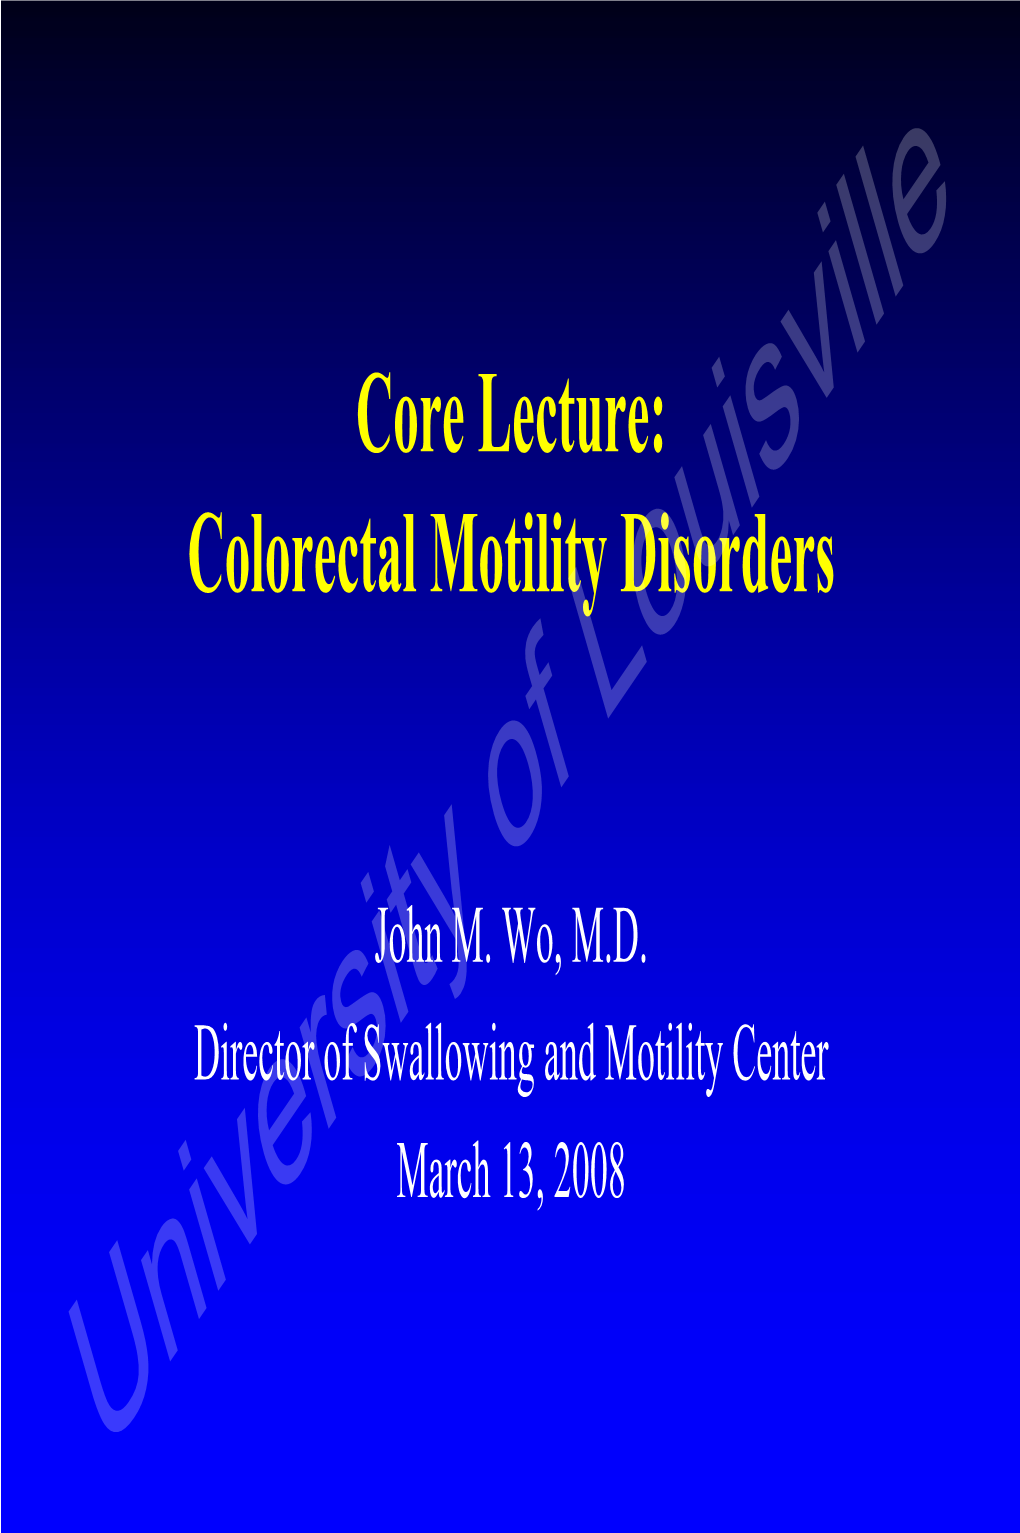 Colorectal Motility Disorders (Wo 2008)